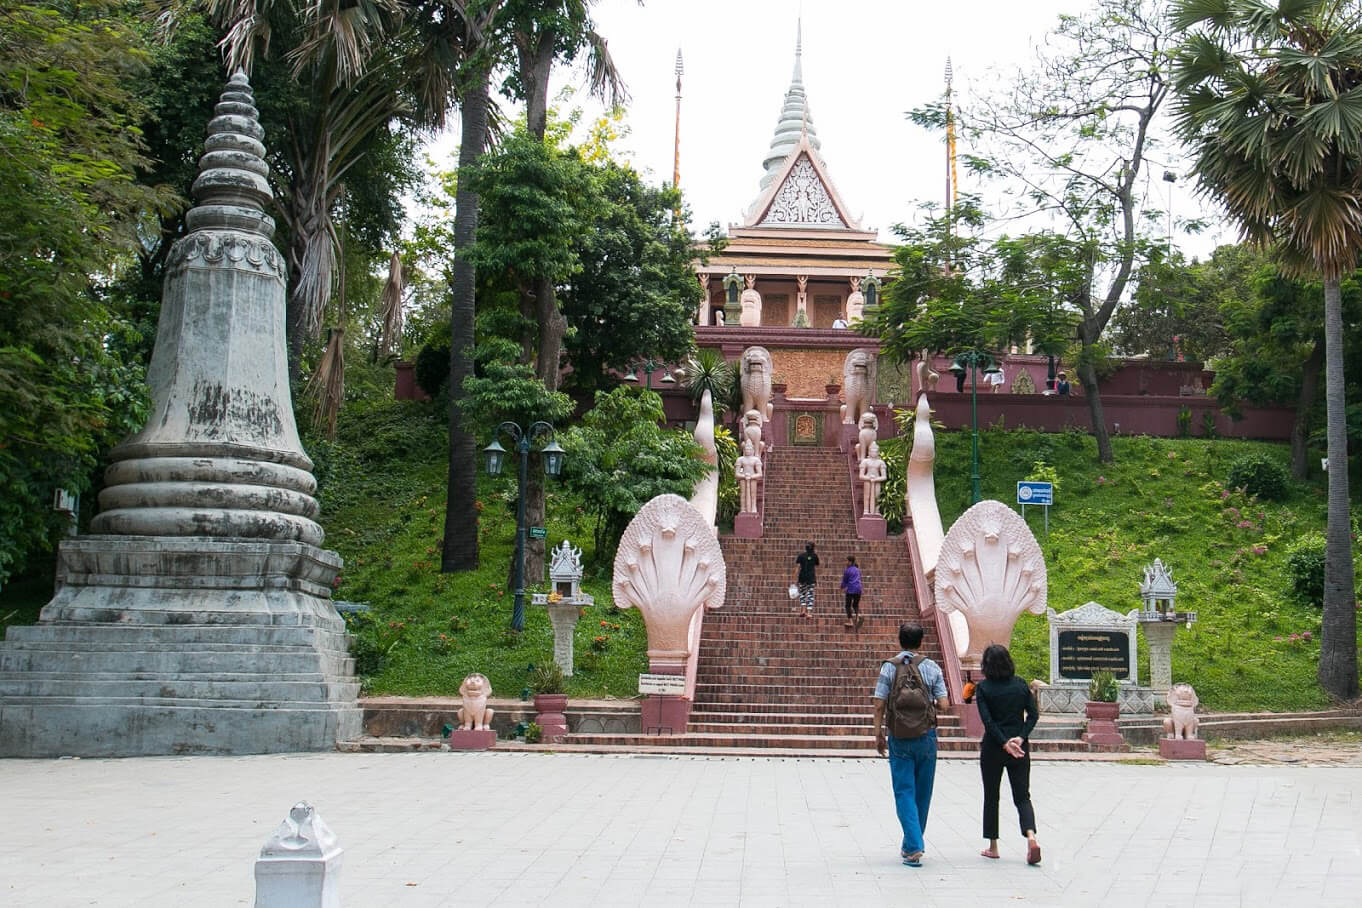 Храм Ват Пном